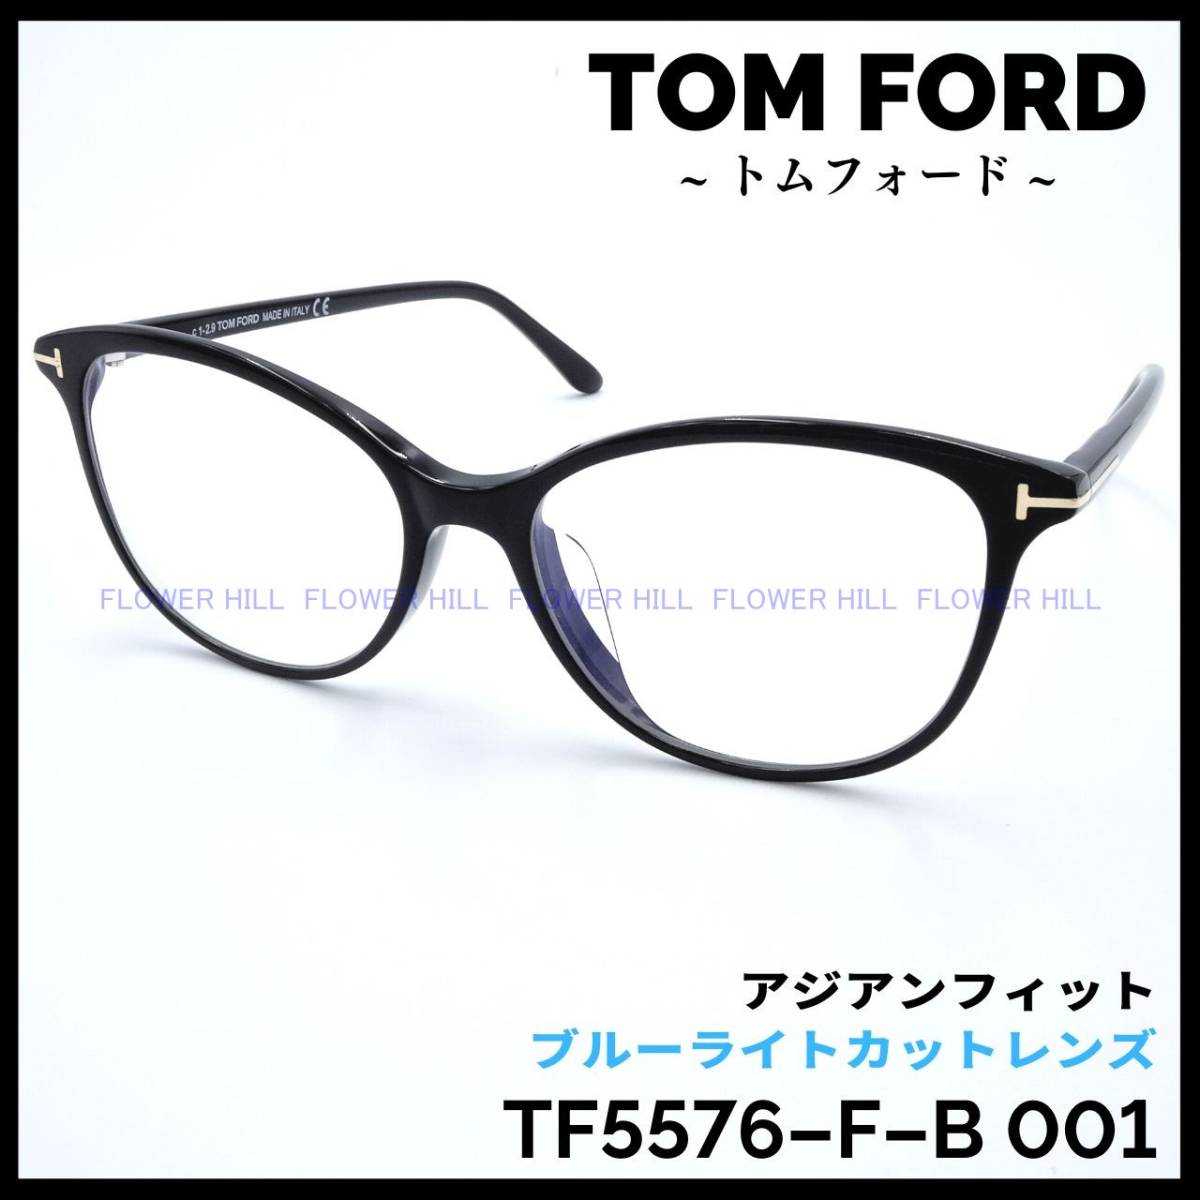 トムフォード TOM FORD メガネ セルフレーム TF5681-F-B 056 アジアン